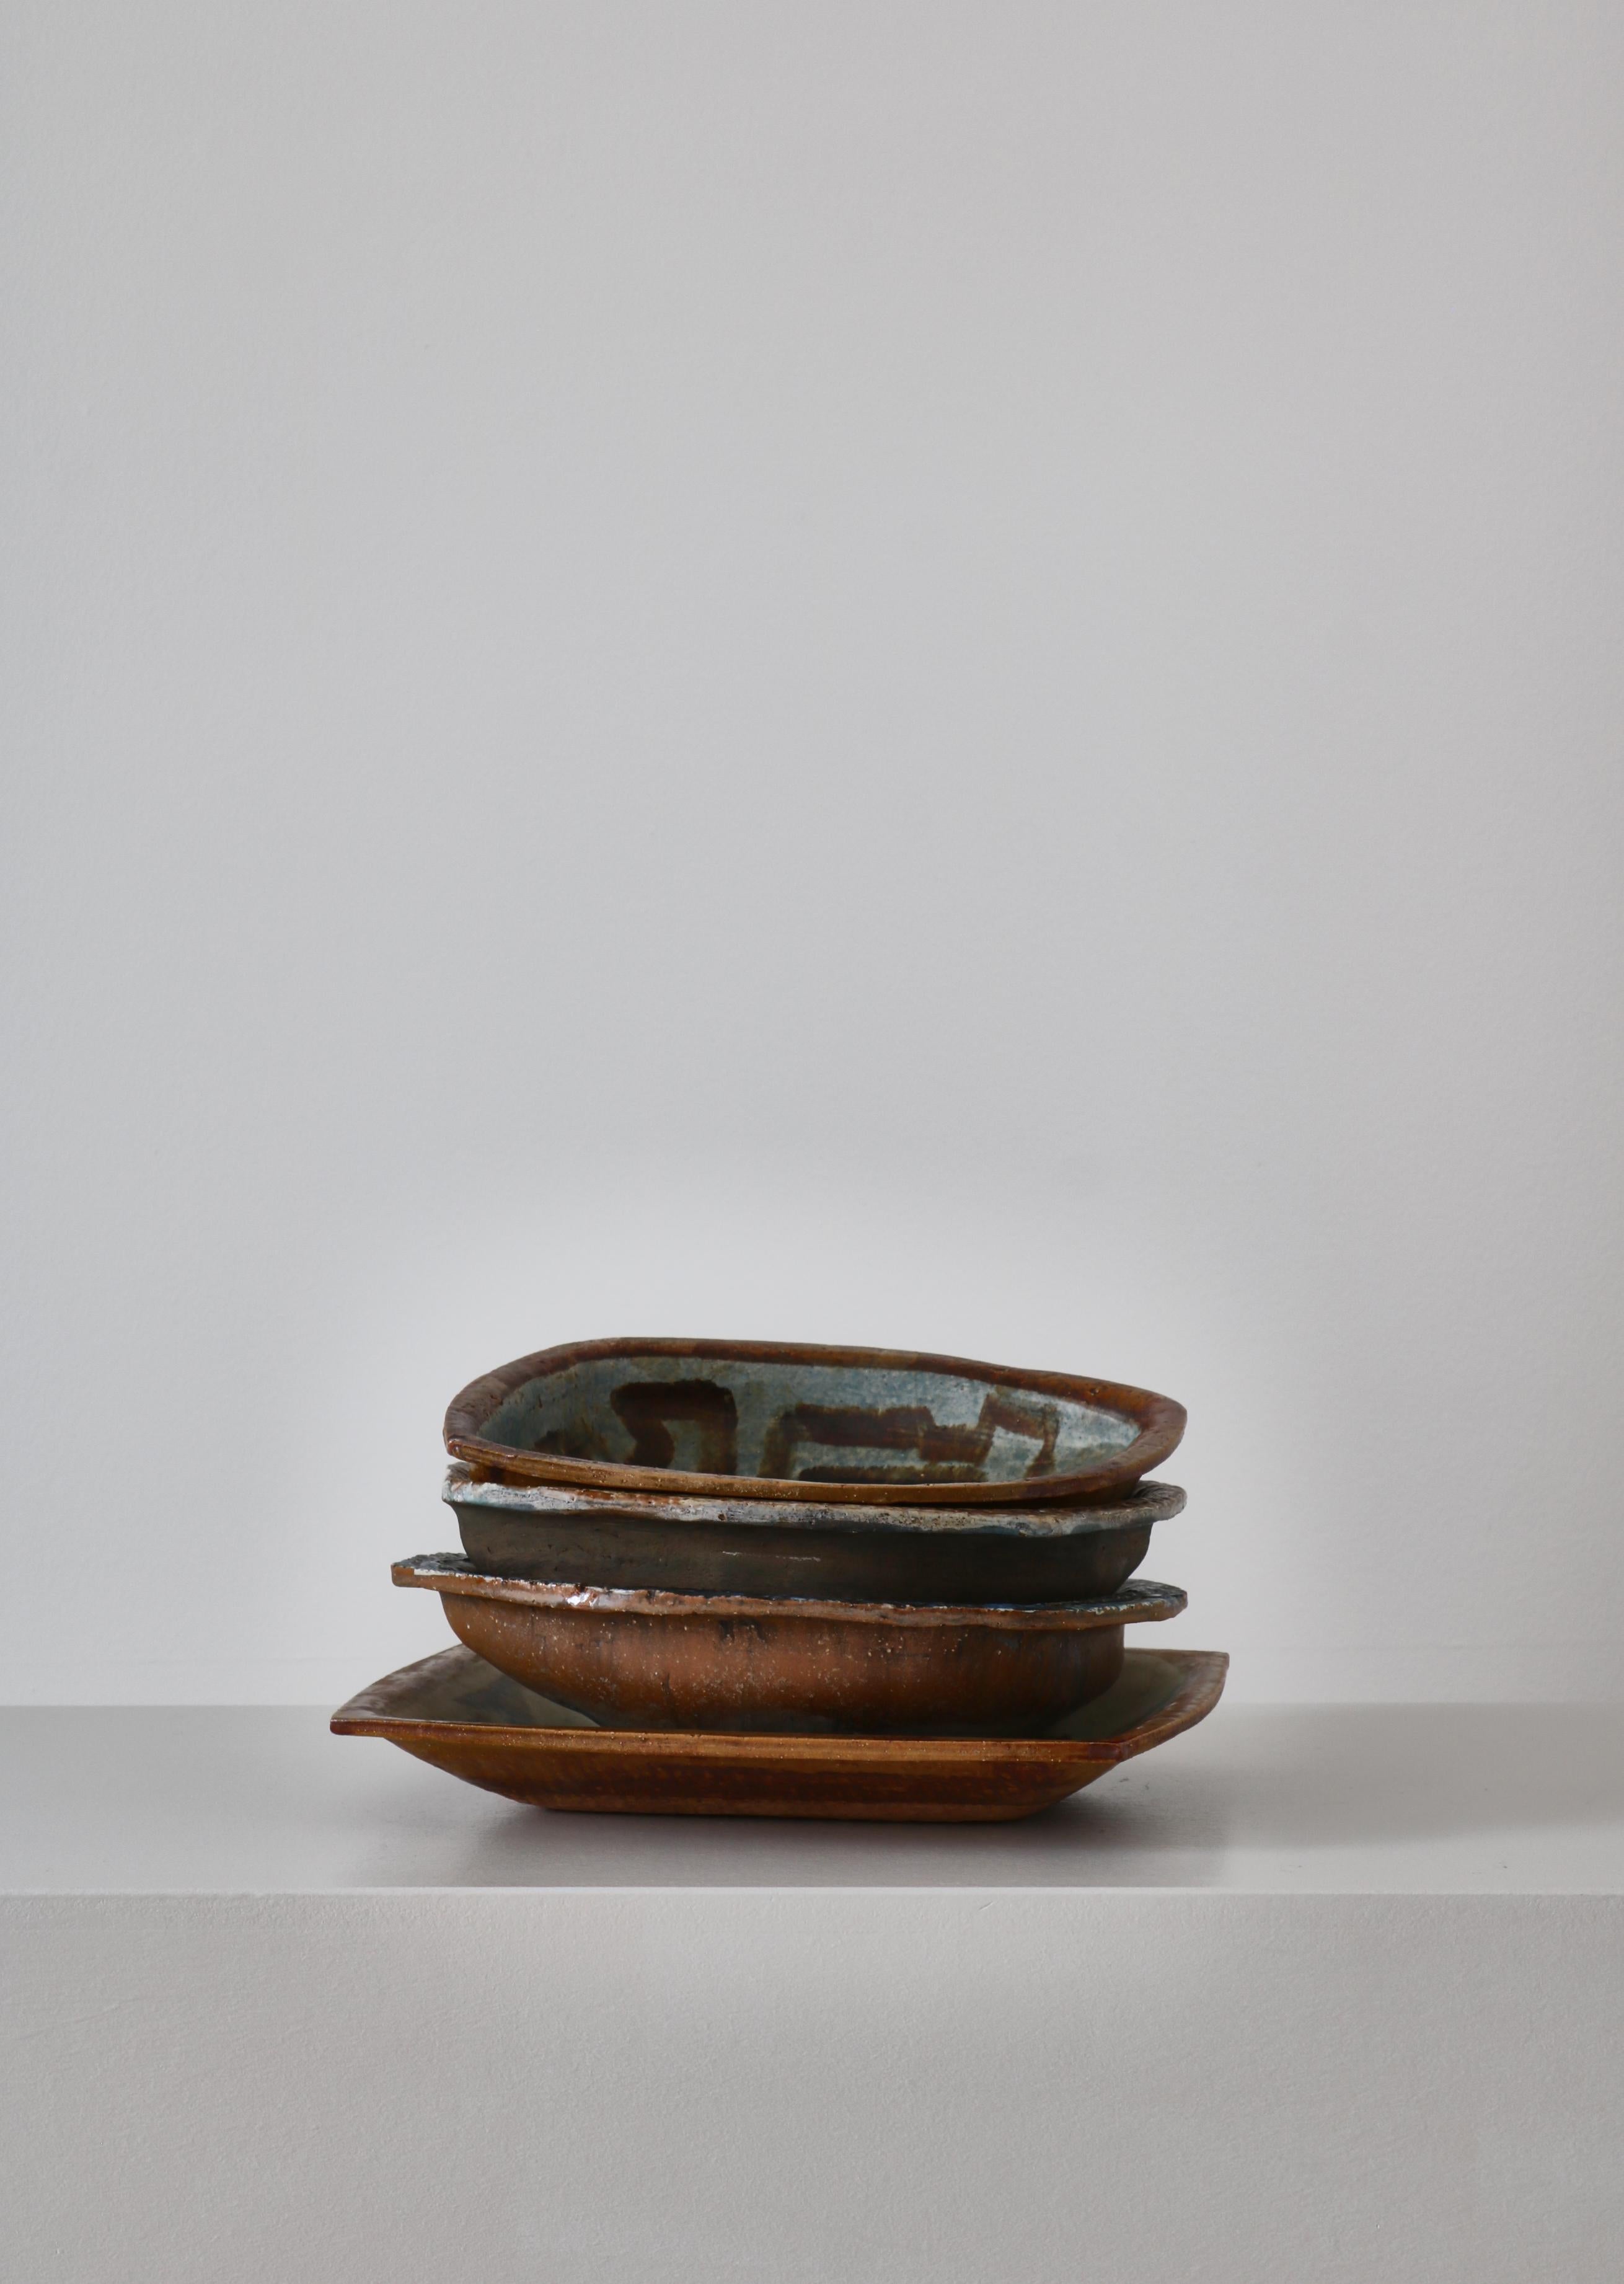 Danish Modern Group of Glazed Ceramics Bowls by Jeppe Hagedorn-Olsen, 1960s For Sale 8